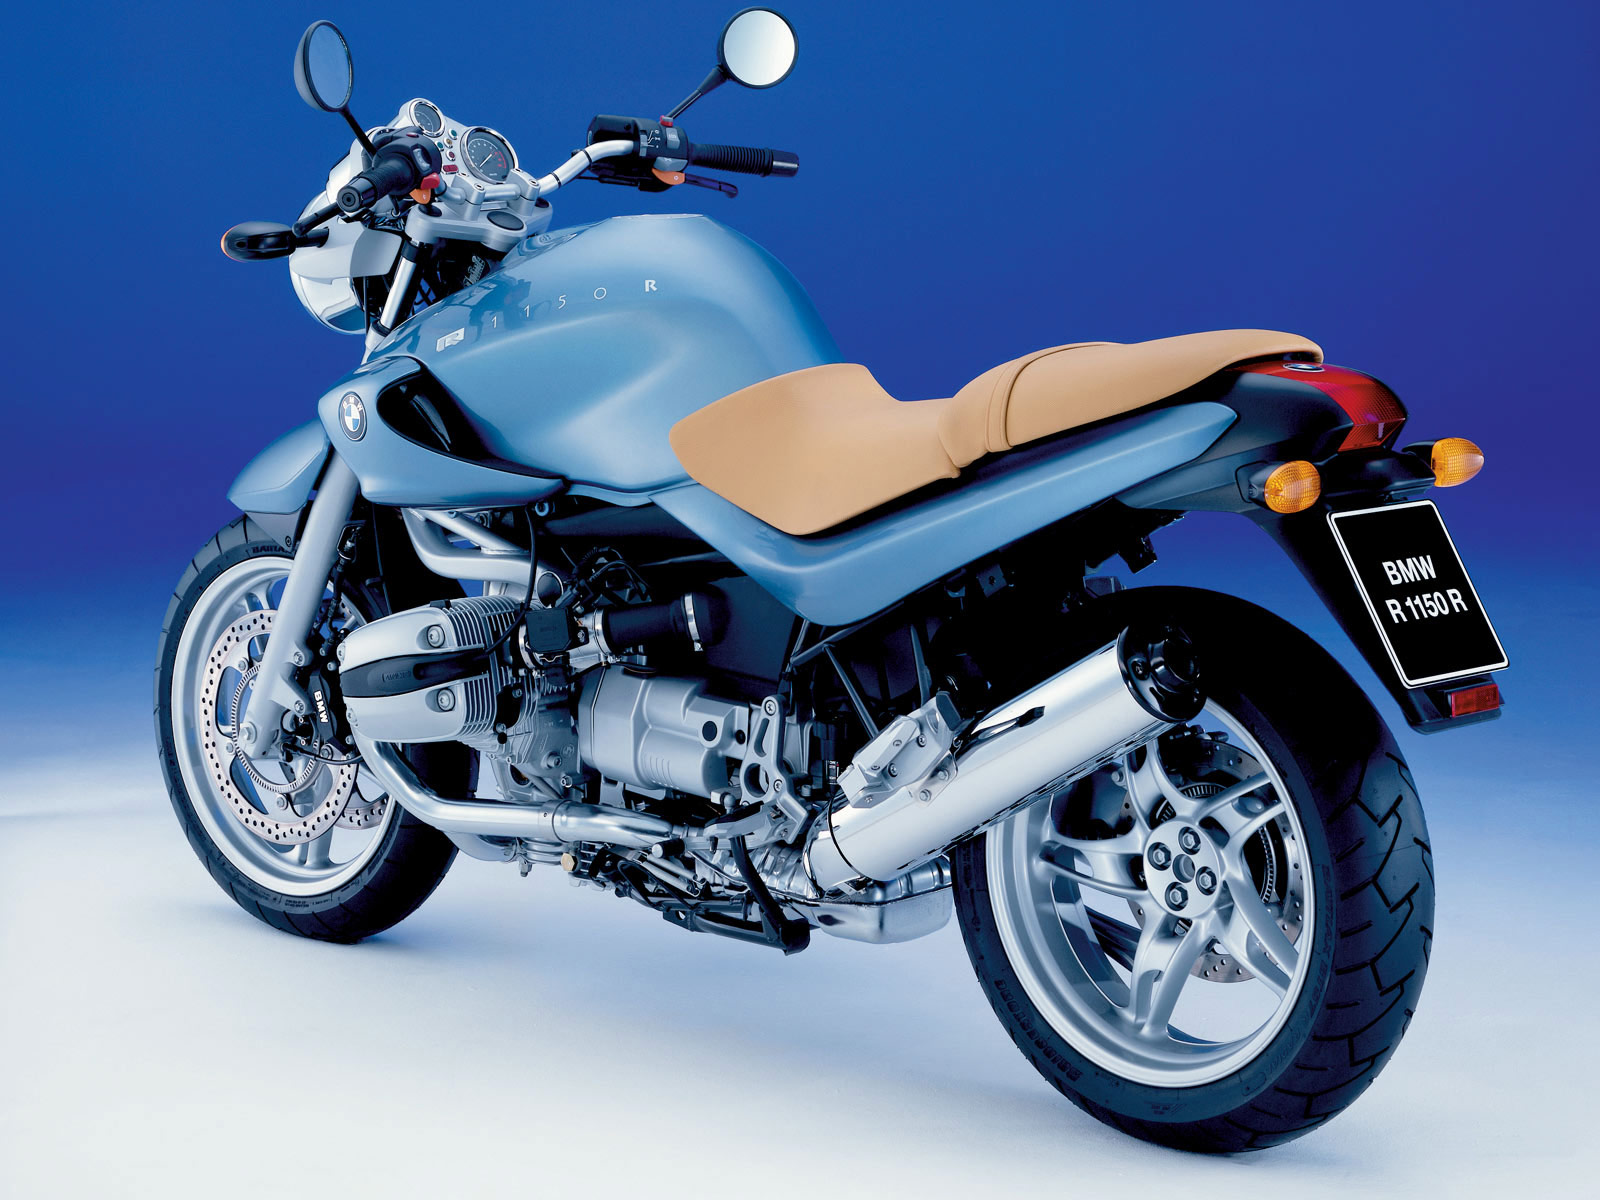 2000 BMW R1150R moto